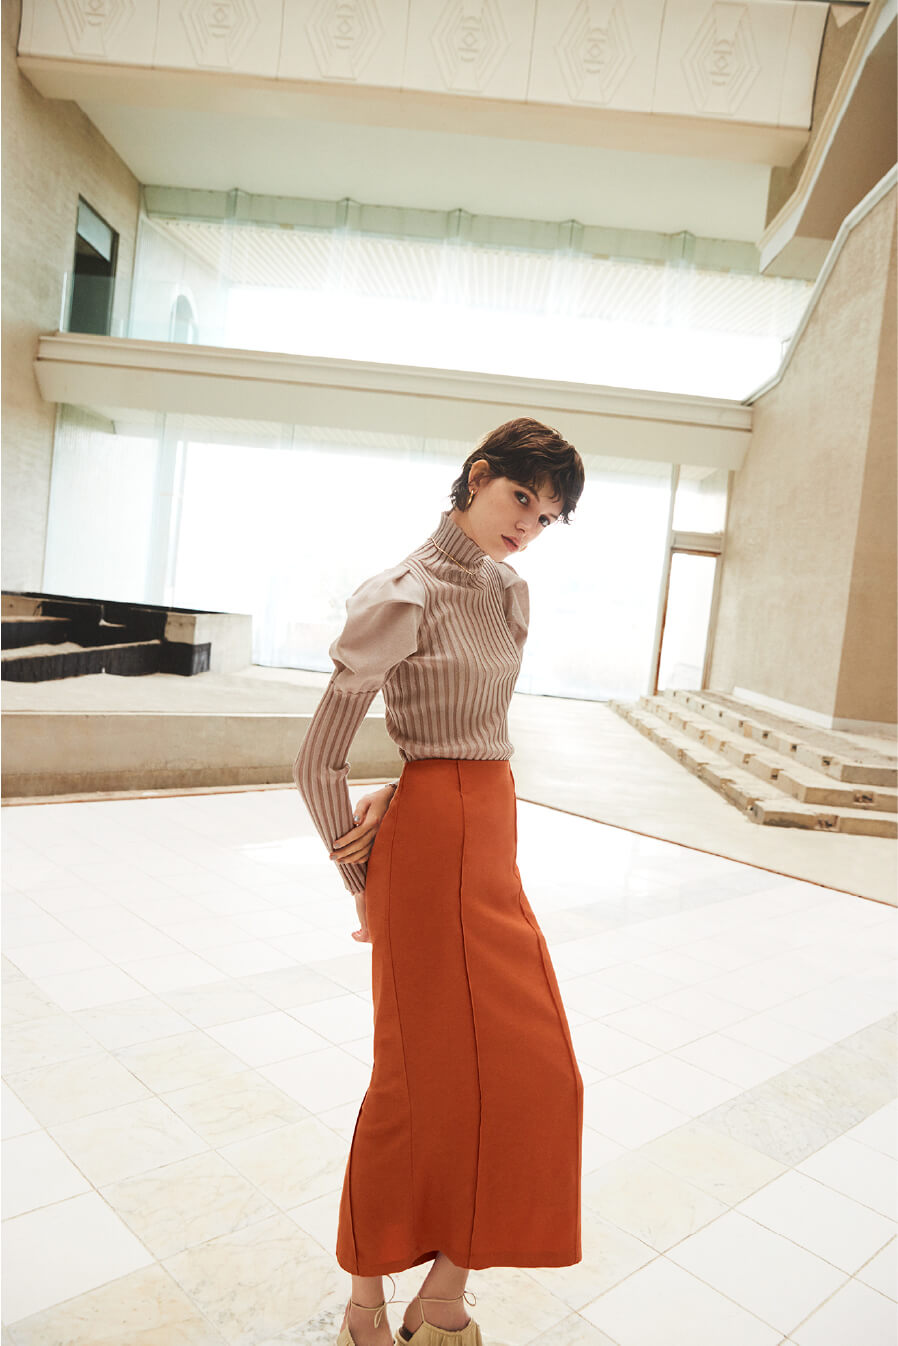 オレンジ色のスカートの女性モデルの画像